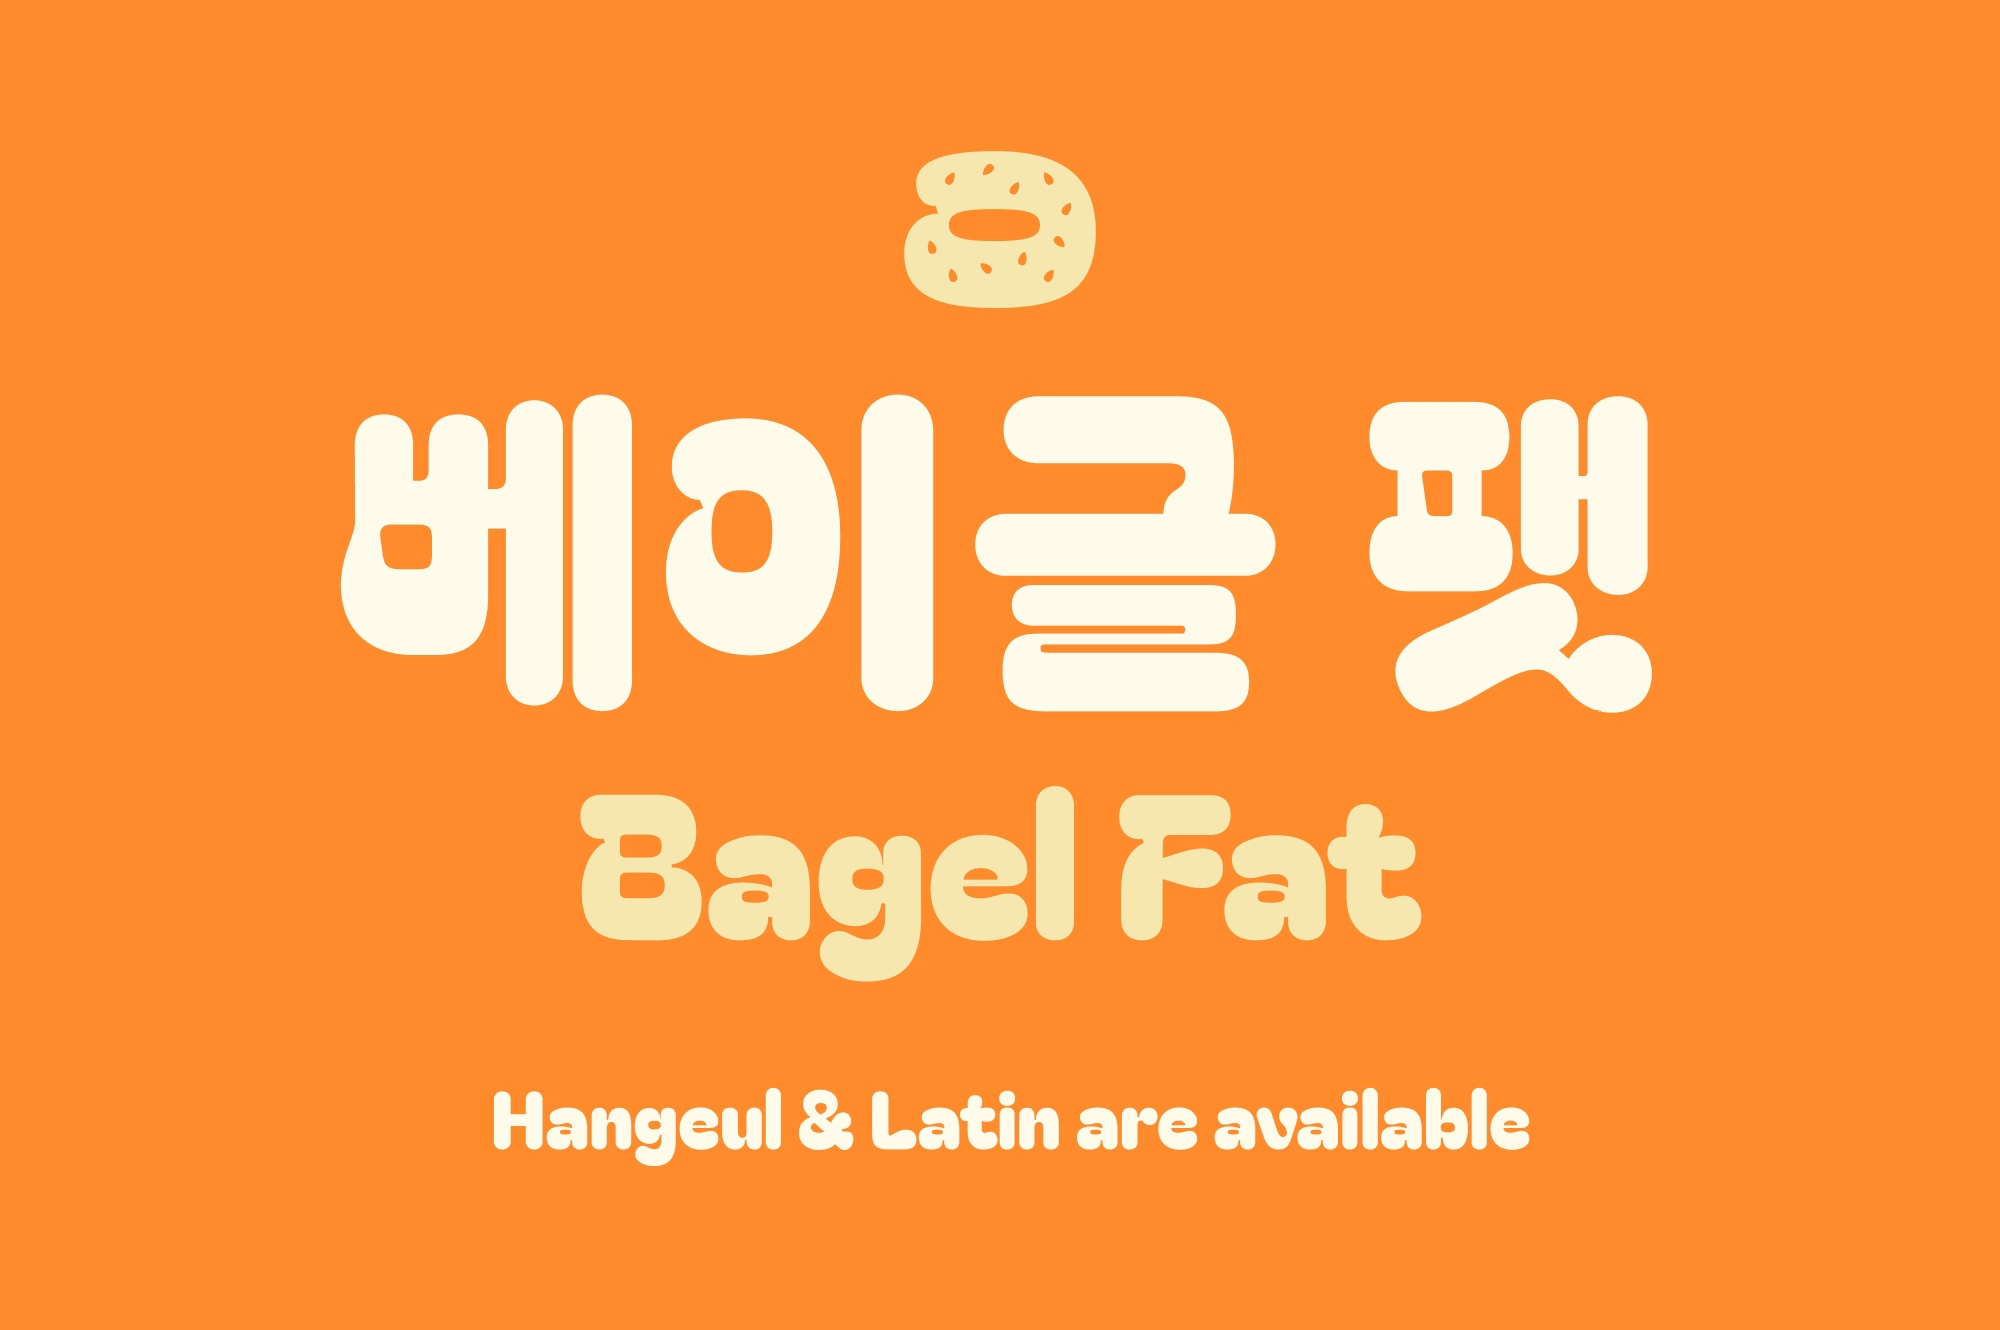 Font Bagel Fat